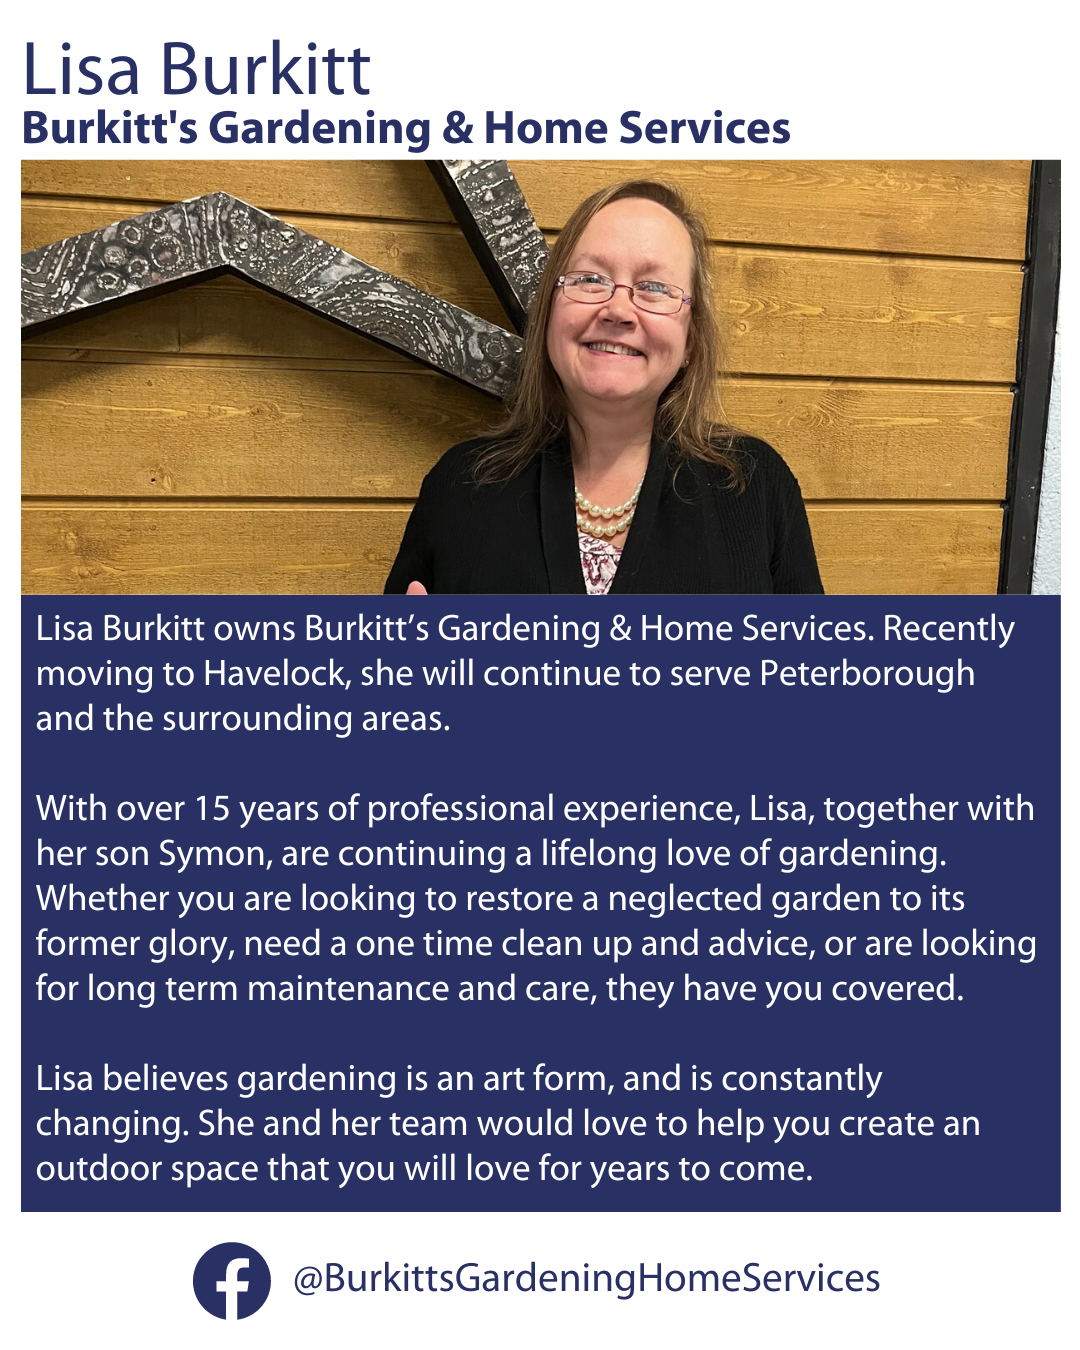 Lisa Burkitt, Burkitt's Gardening & Home Services bio and social channels